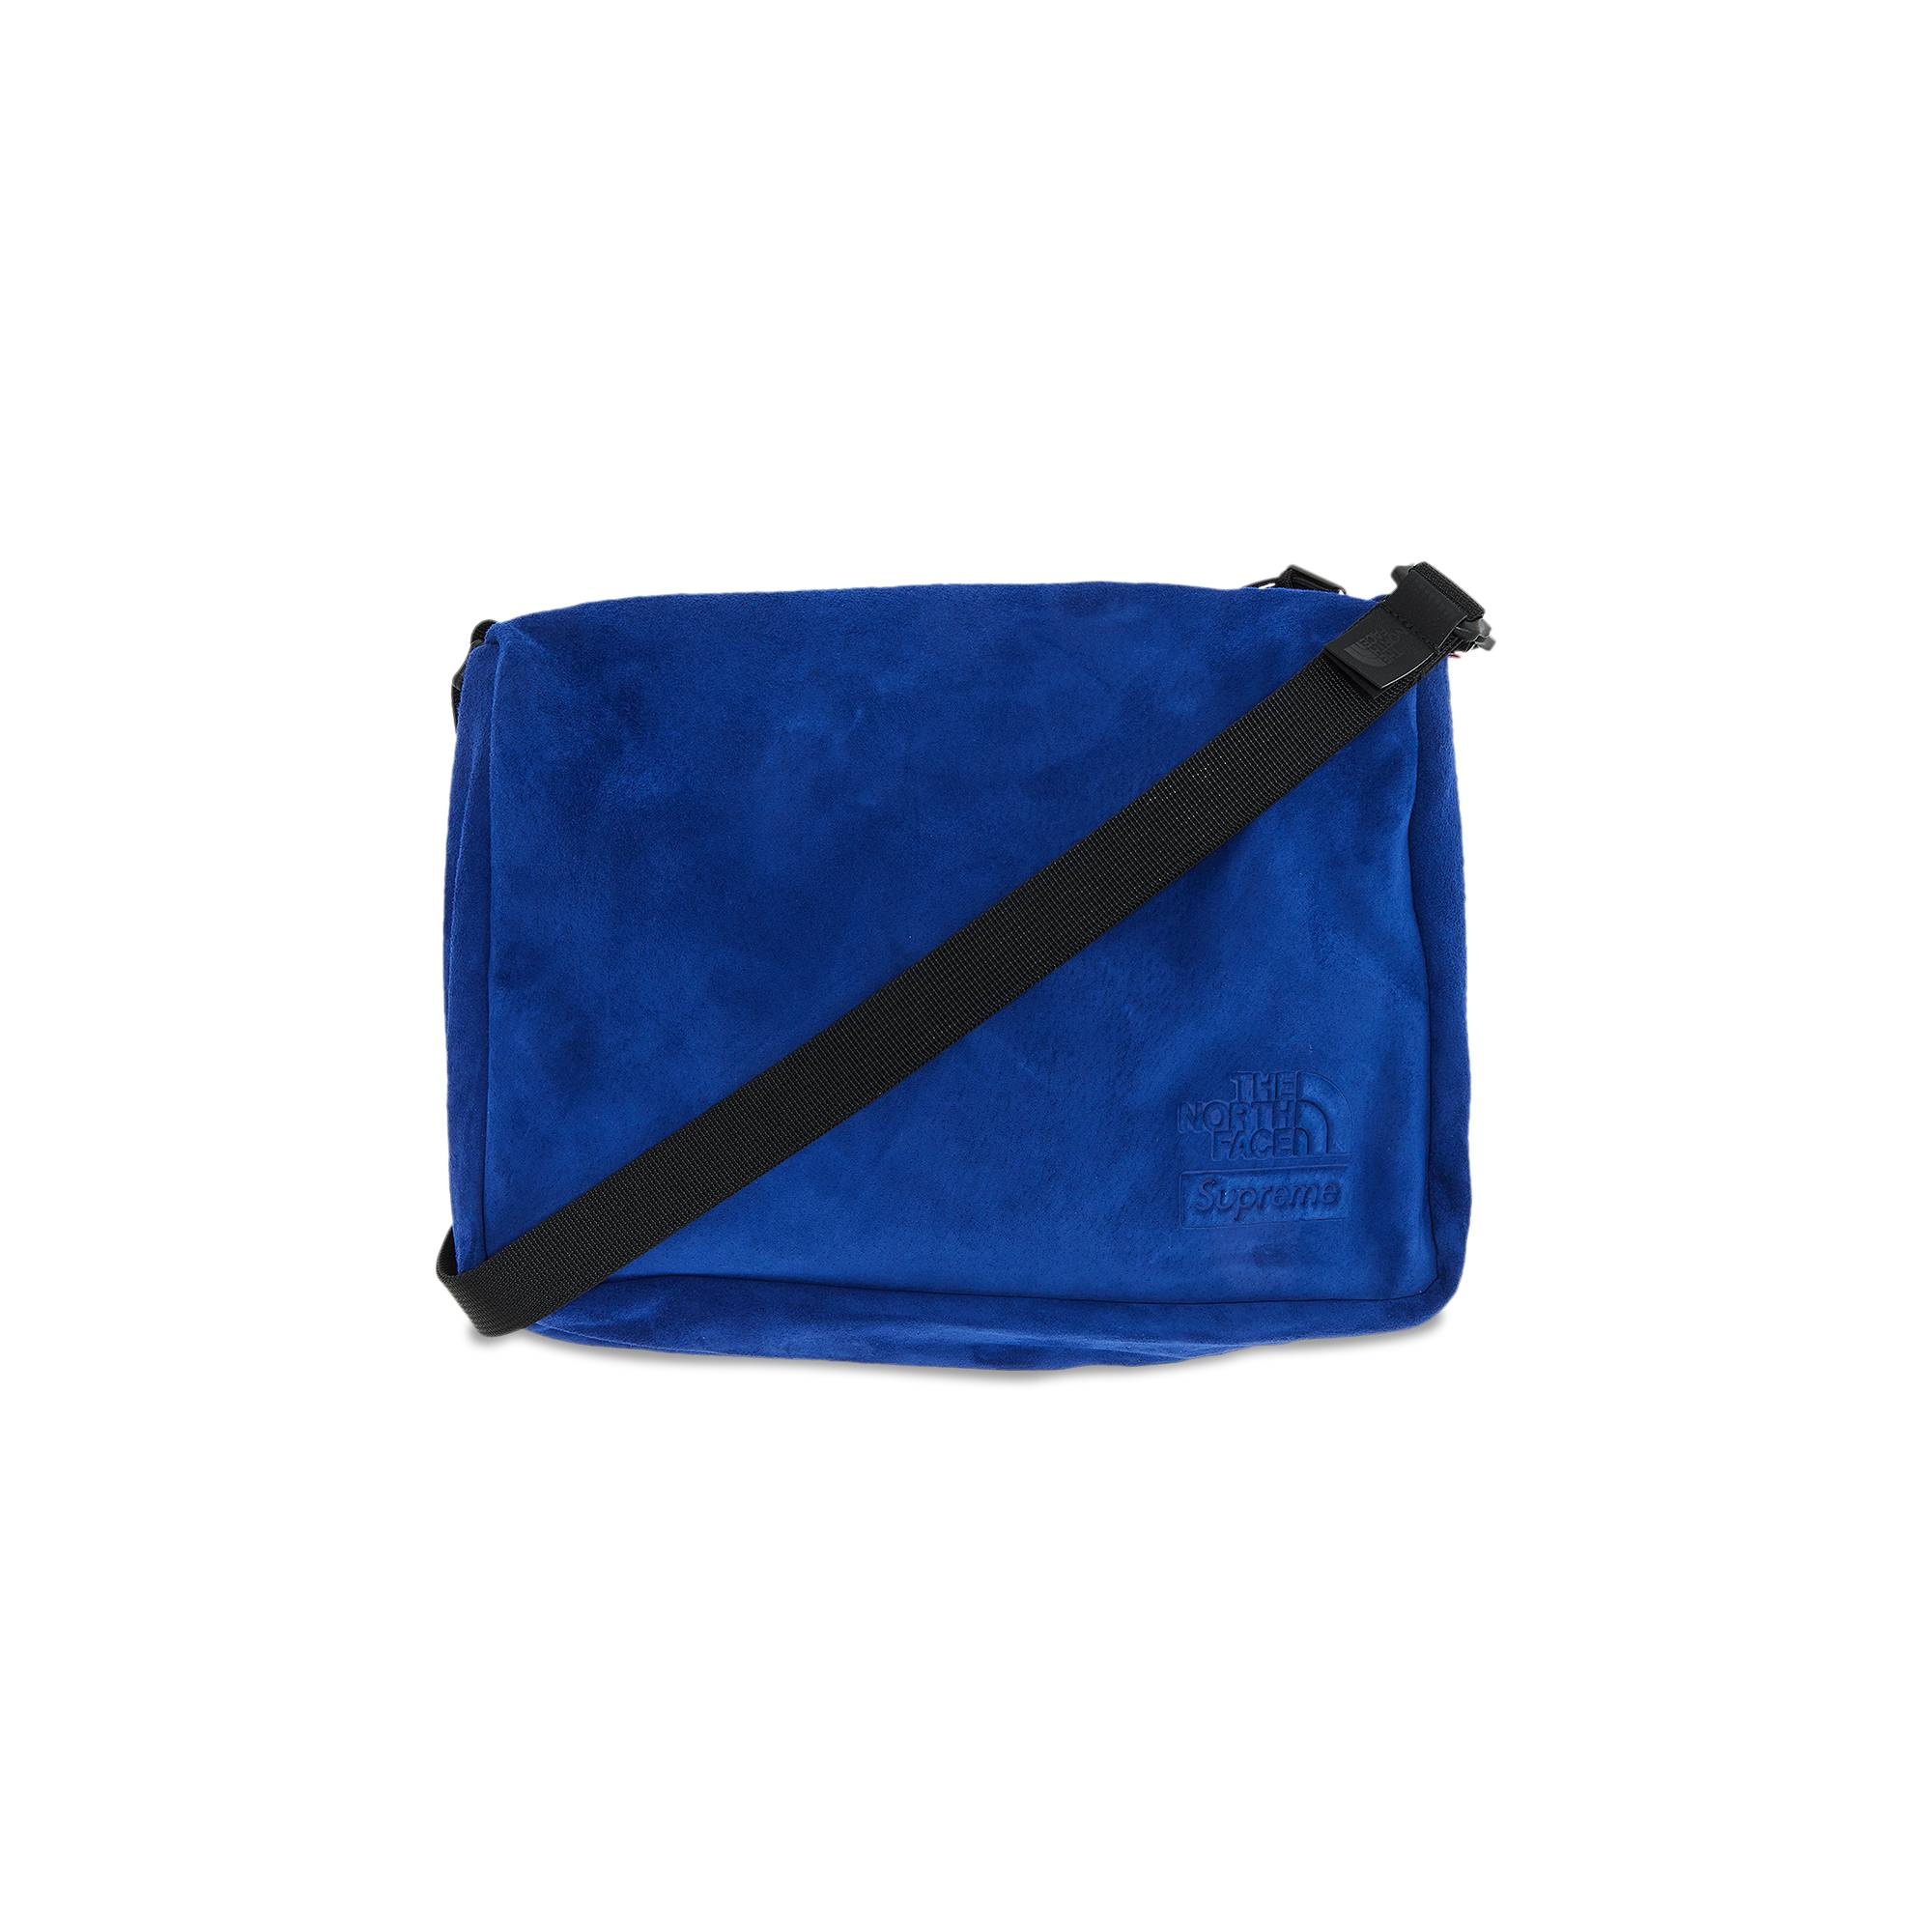 17,100円Supreme TNF Suede Shoulder Bag Blue